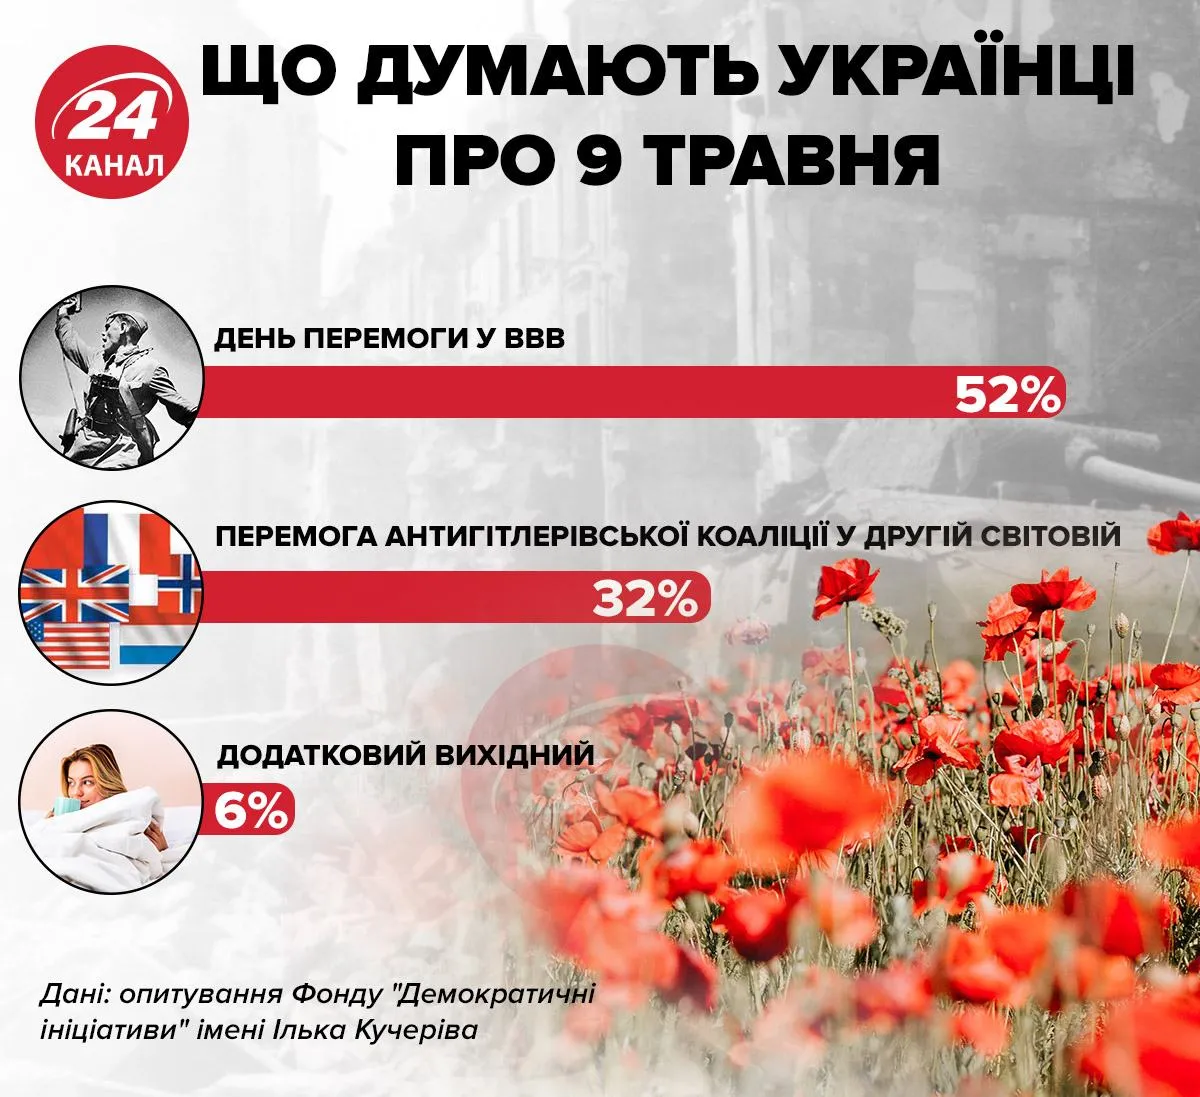 Що думають українці про 9 травня / Інфографіка 24 каналу